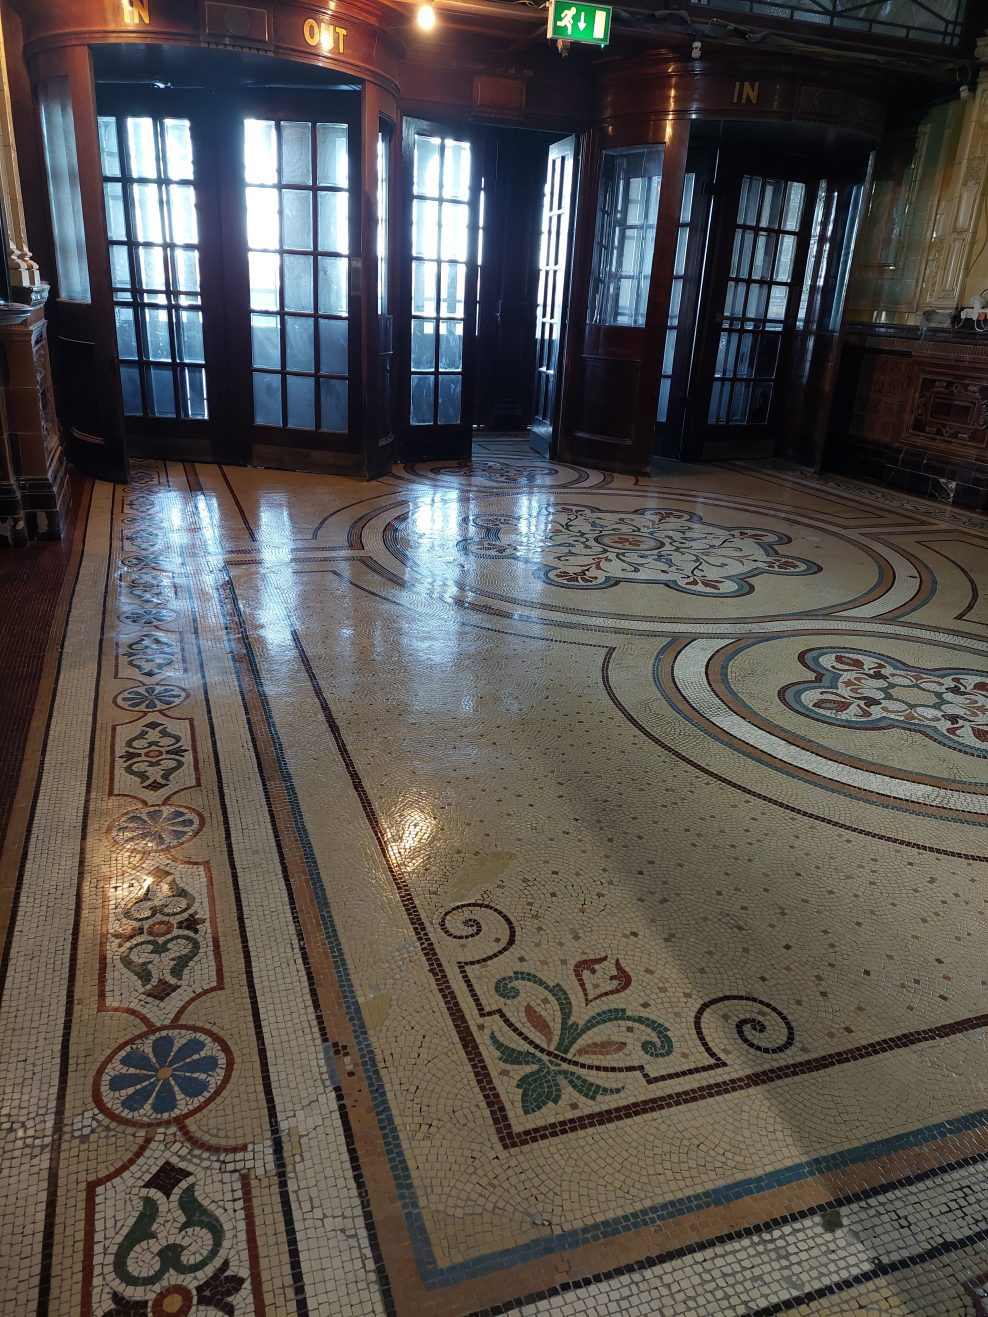 the restored floor